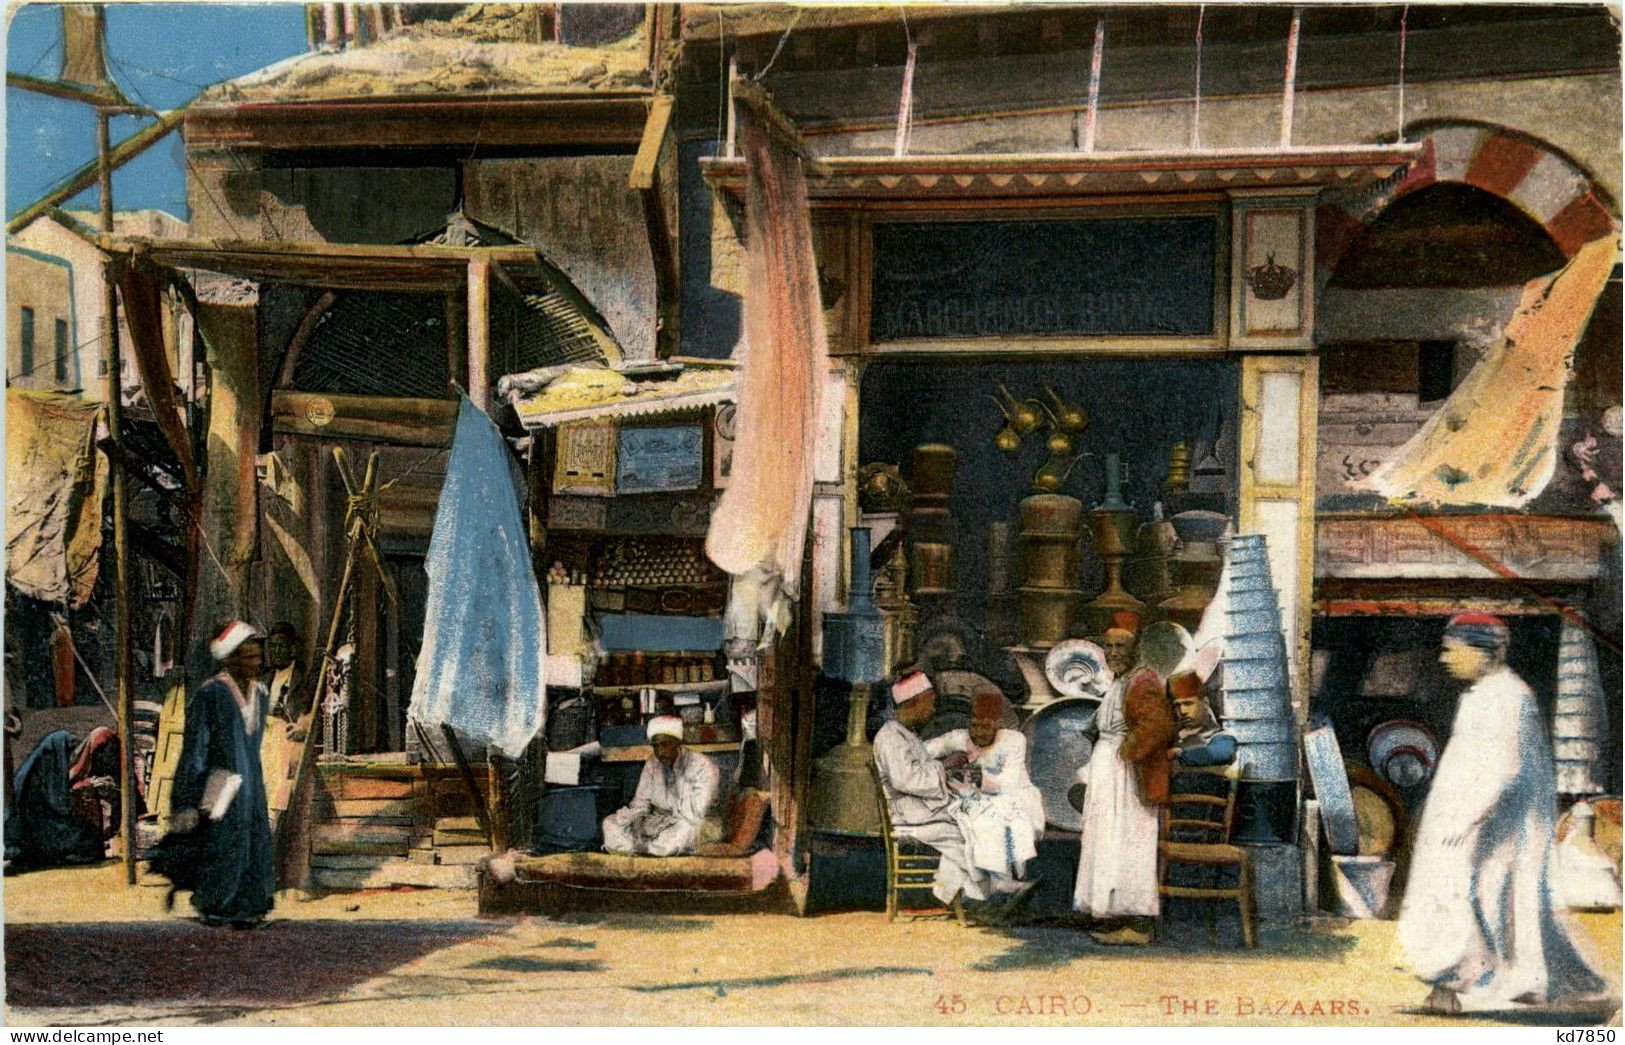 Cairo - The Bazaars - Cairo